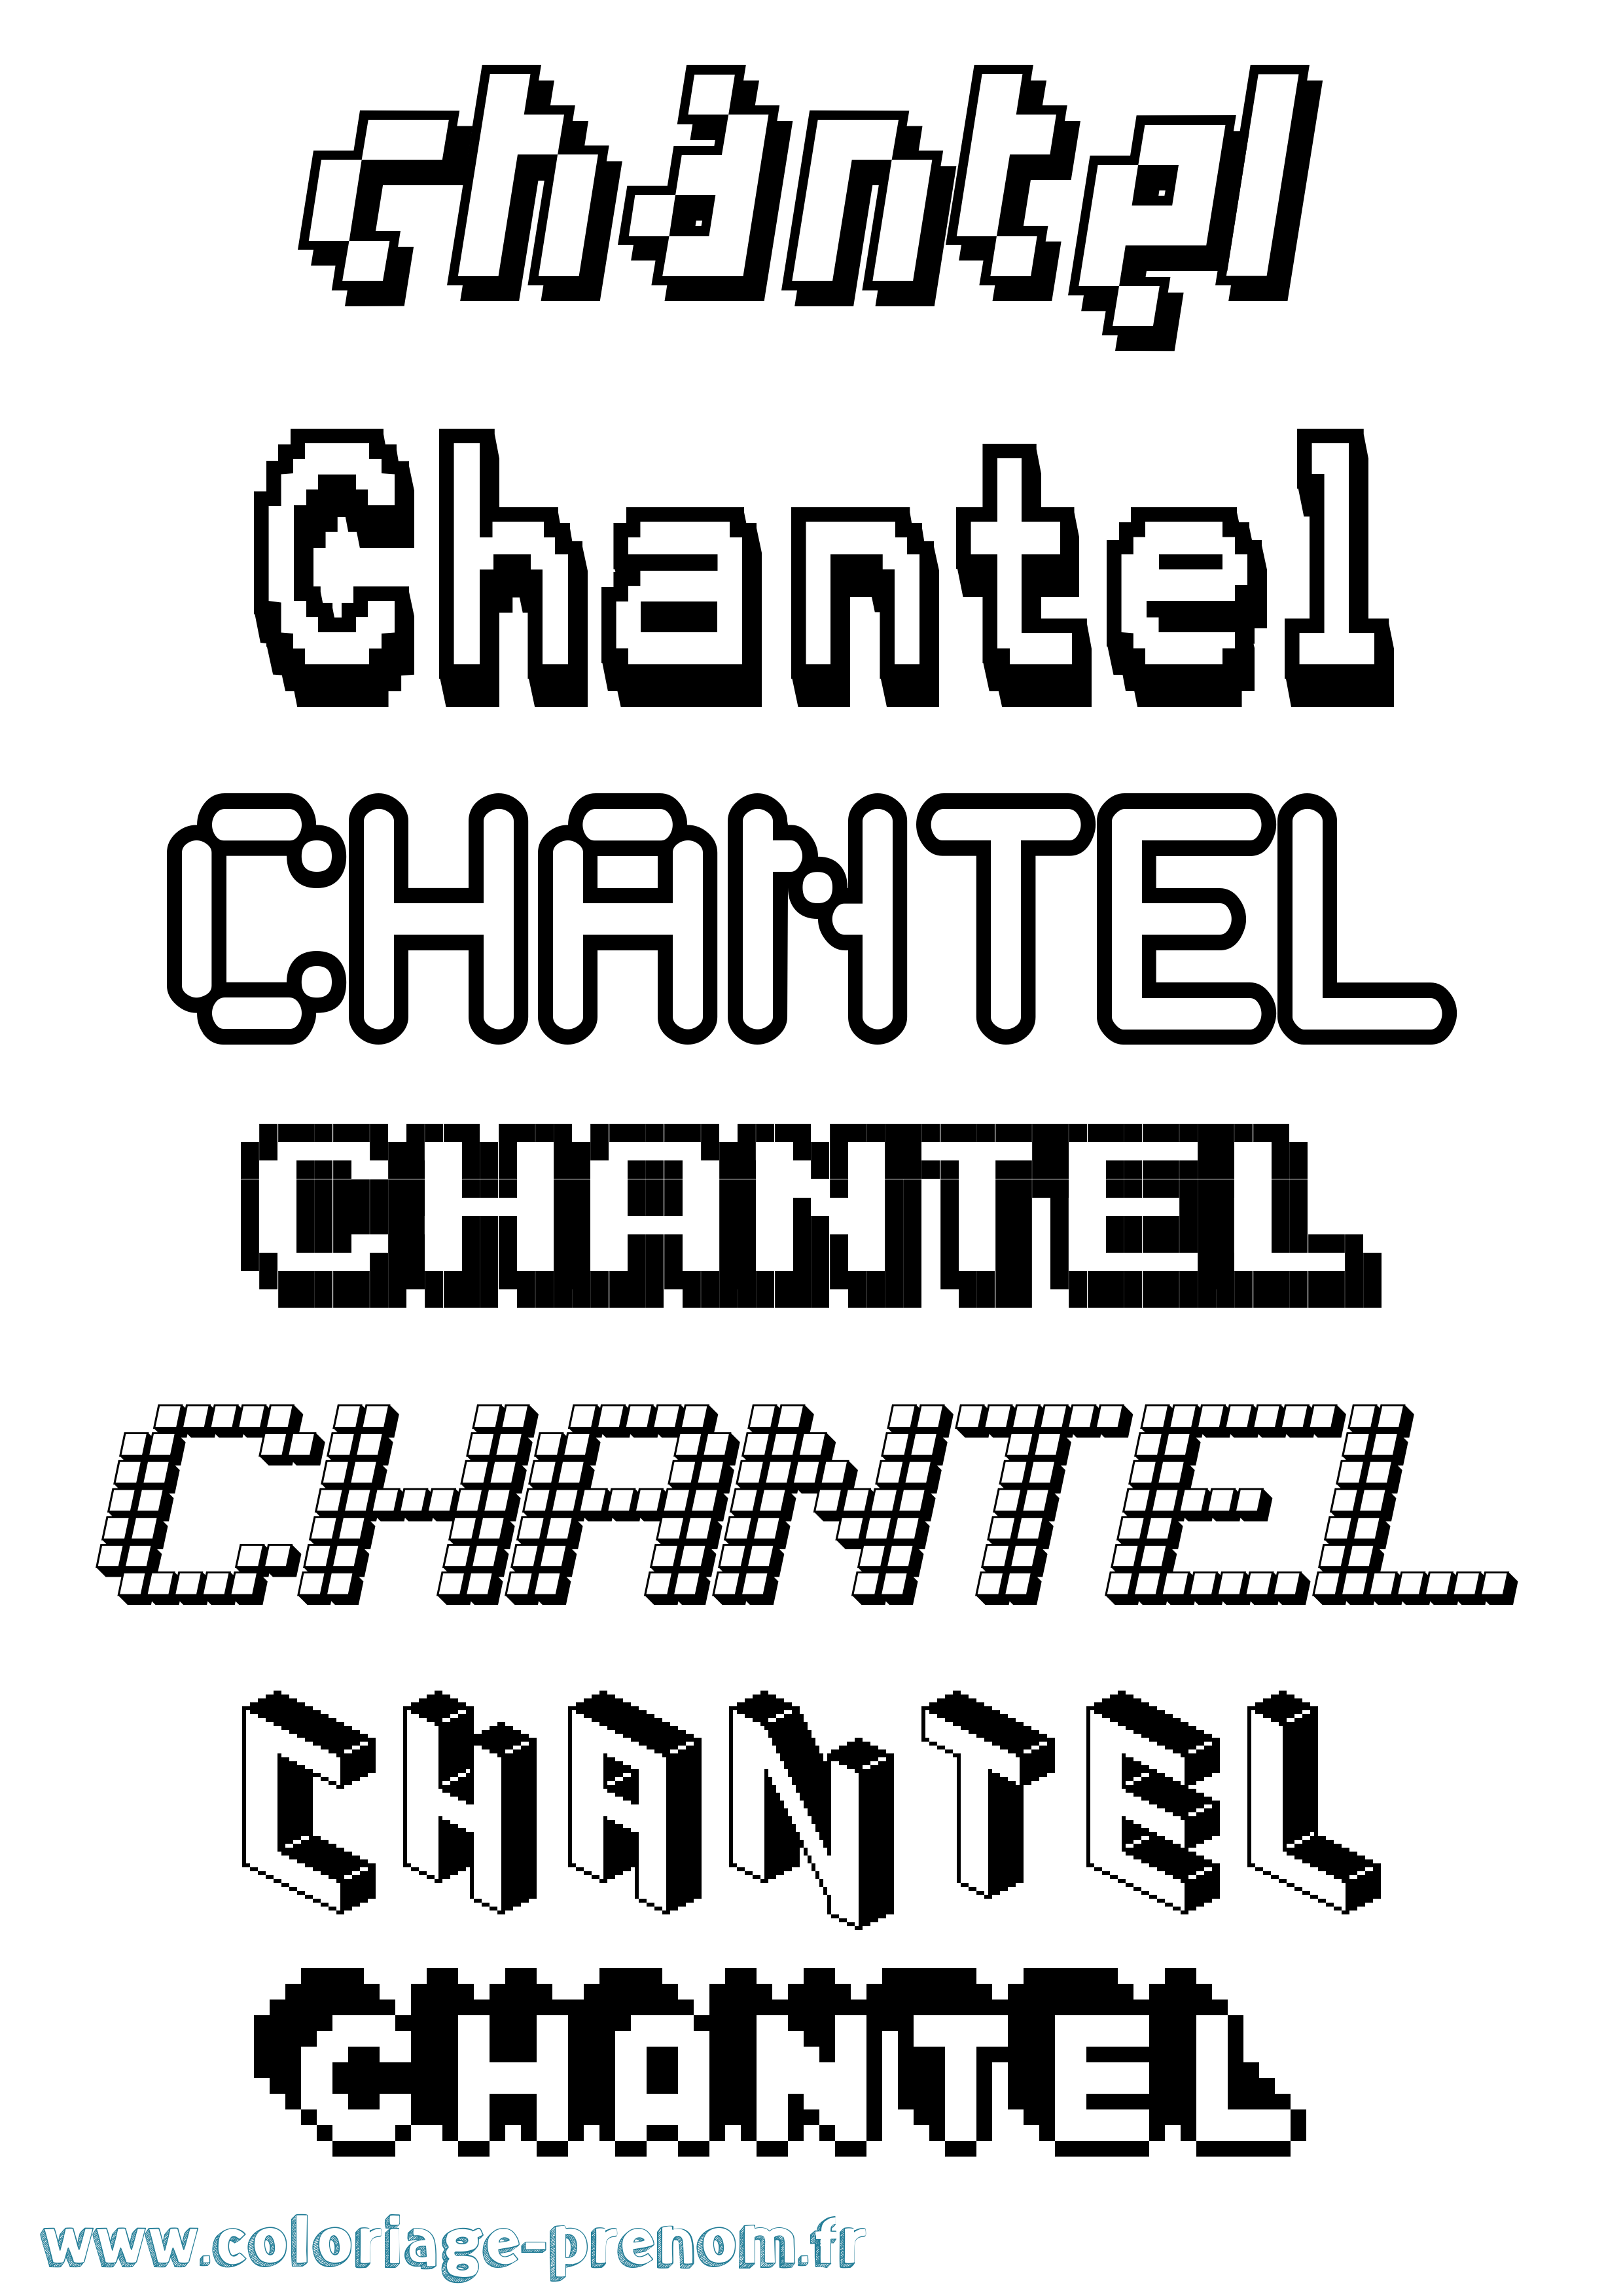 Coloriage prénom Chantel Pixel